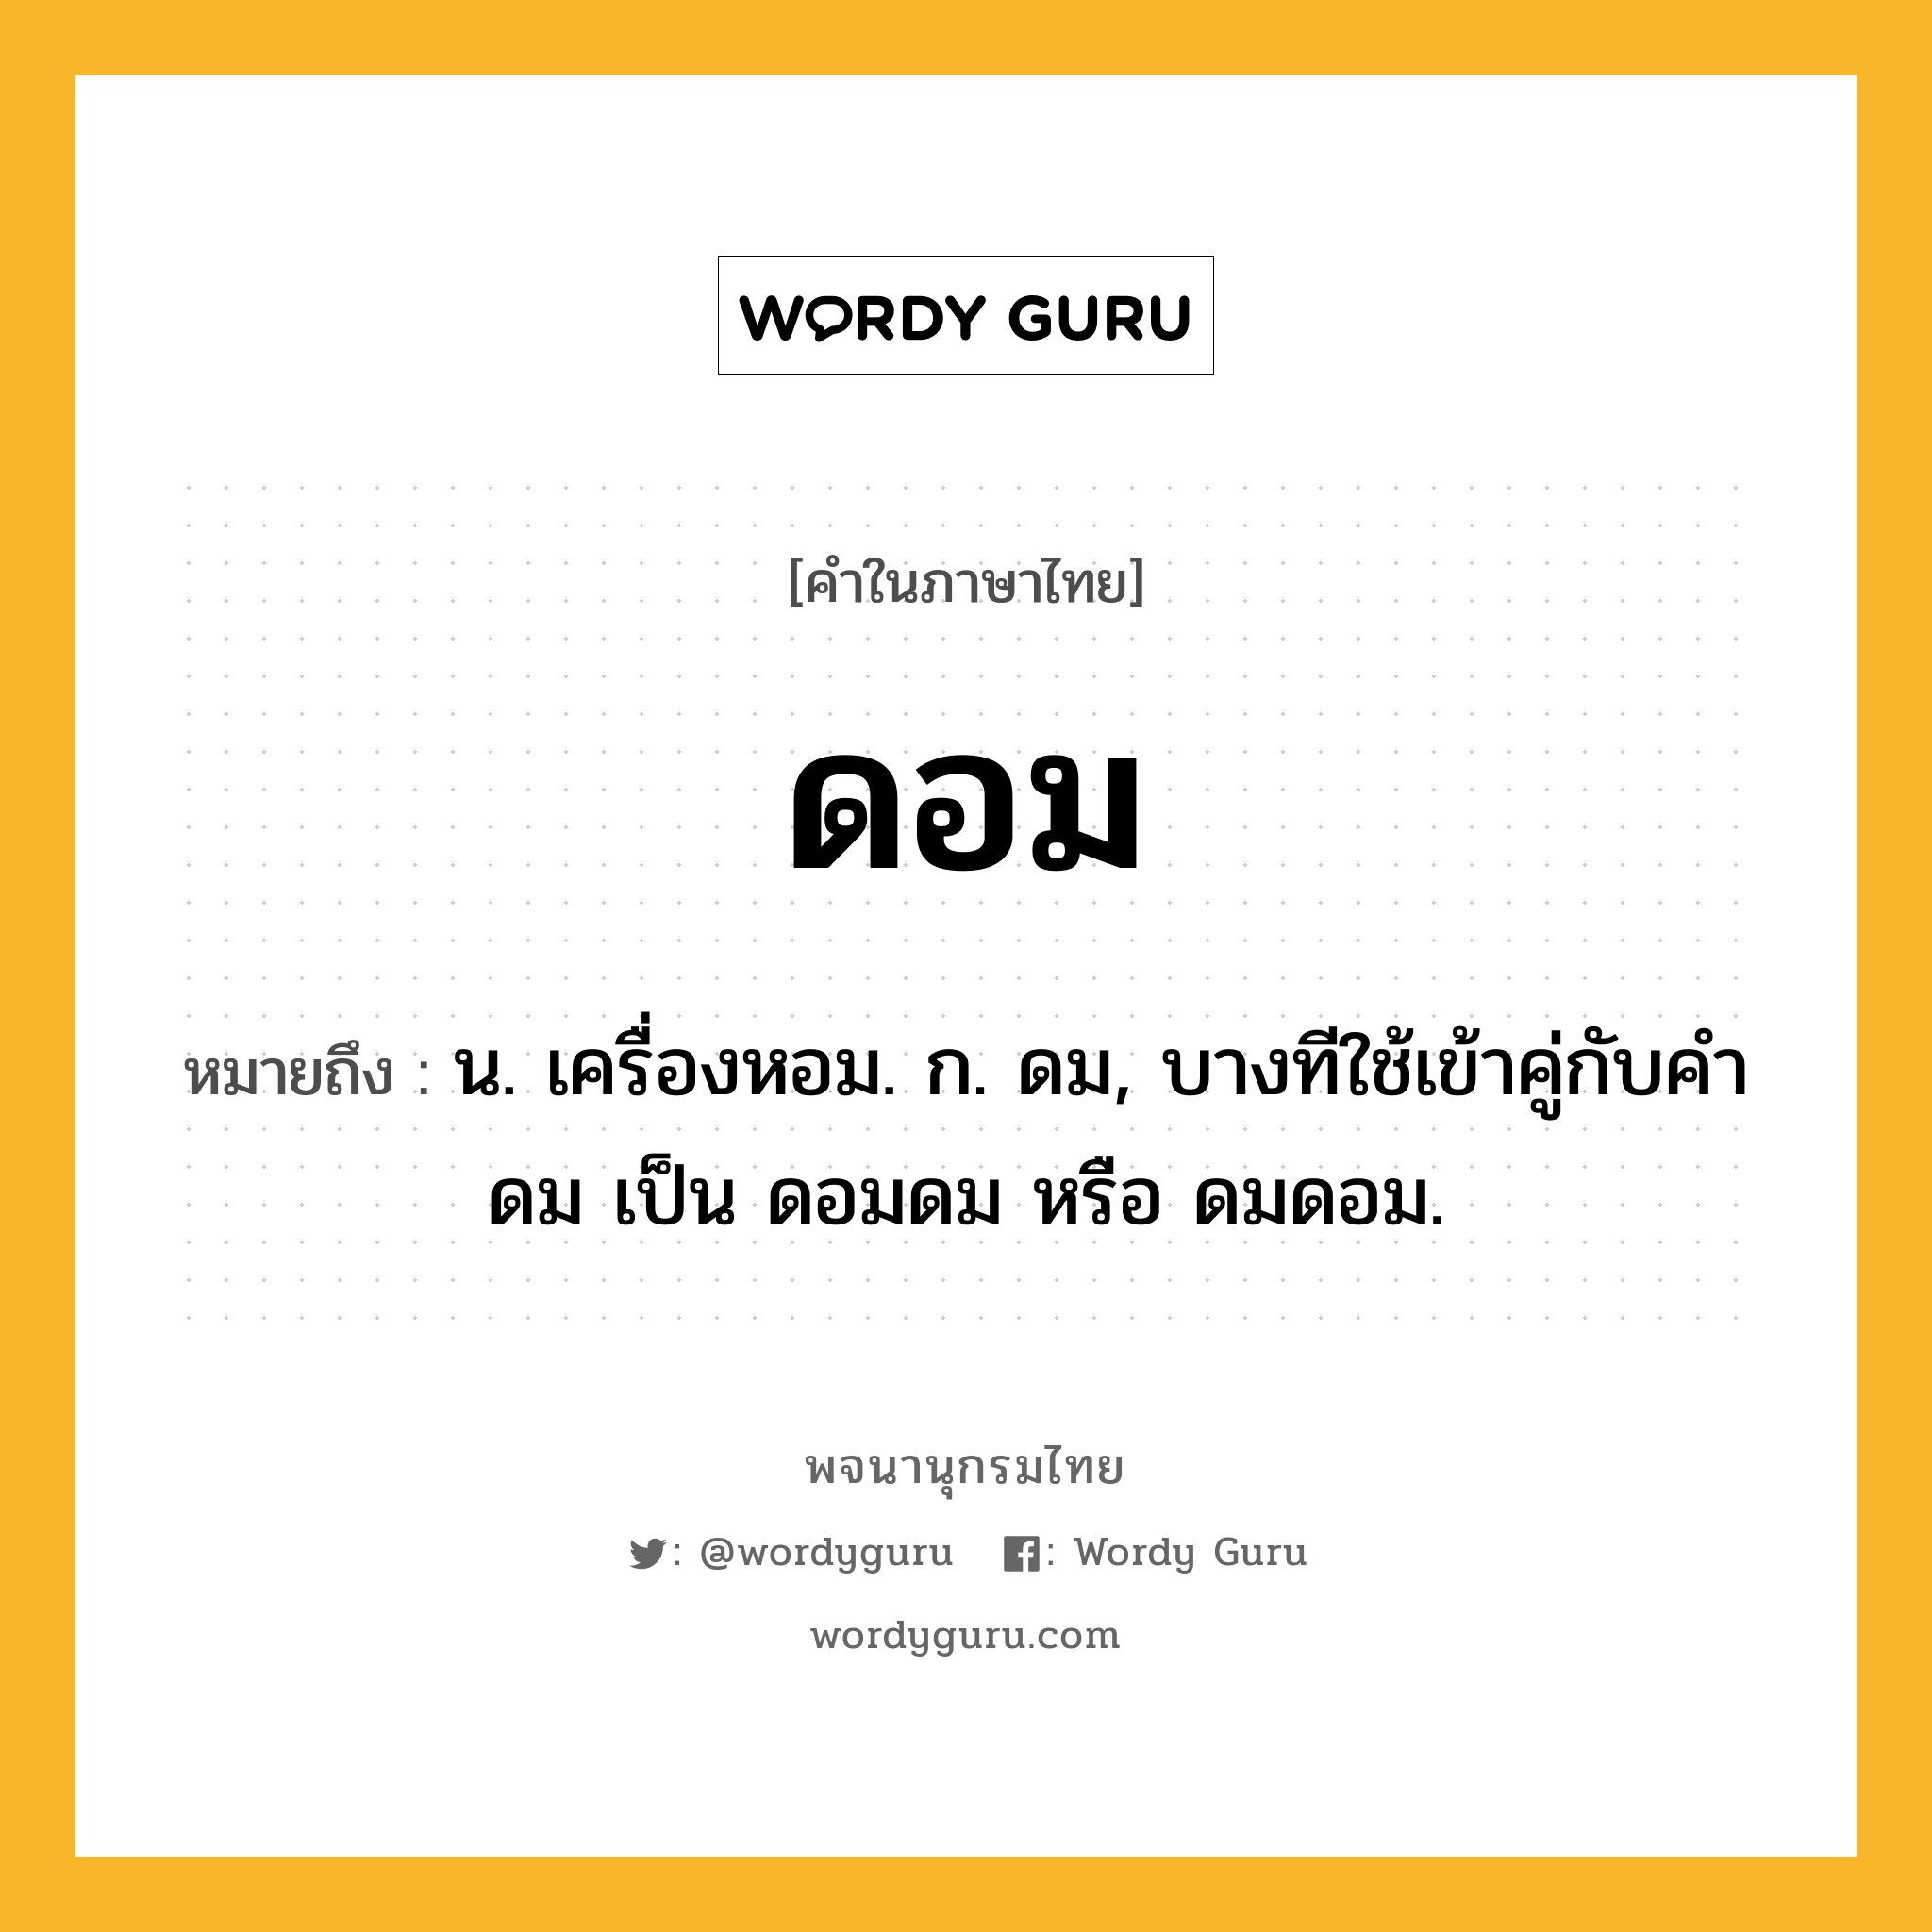 ดอม ความหมาย หมายถึงอะไร?, คำในภาษาไทย ดอม หมายถึง น. เครื่องหอม. ก. ดม, บางทีใช้เข้าคู่กับคำ ดม เป็น ดอมดม หรือ ดมดอม.